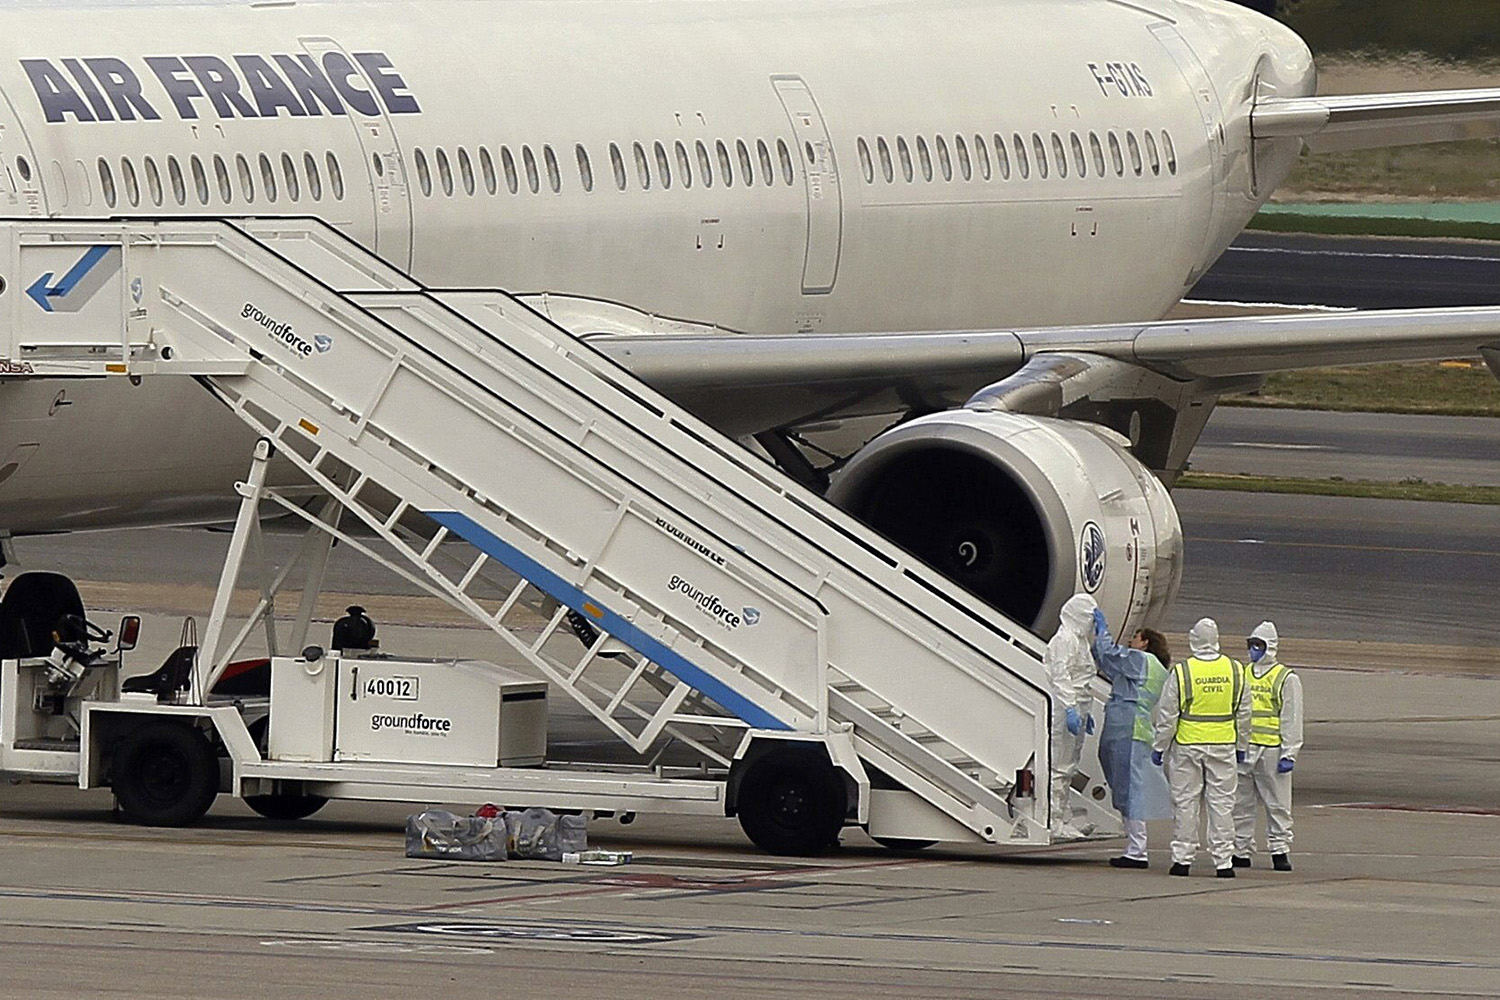 Barajas activa el protocolo de emergencia por un pasajero con temblores en un vuelo de Air France